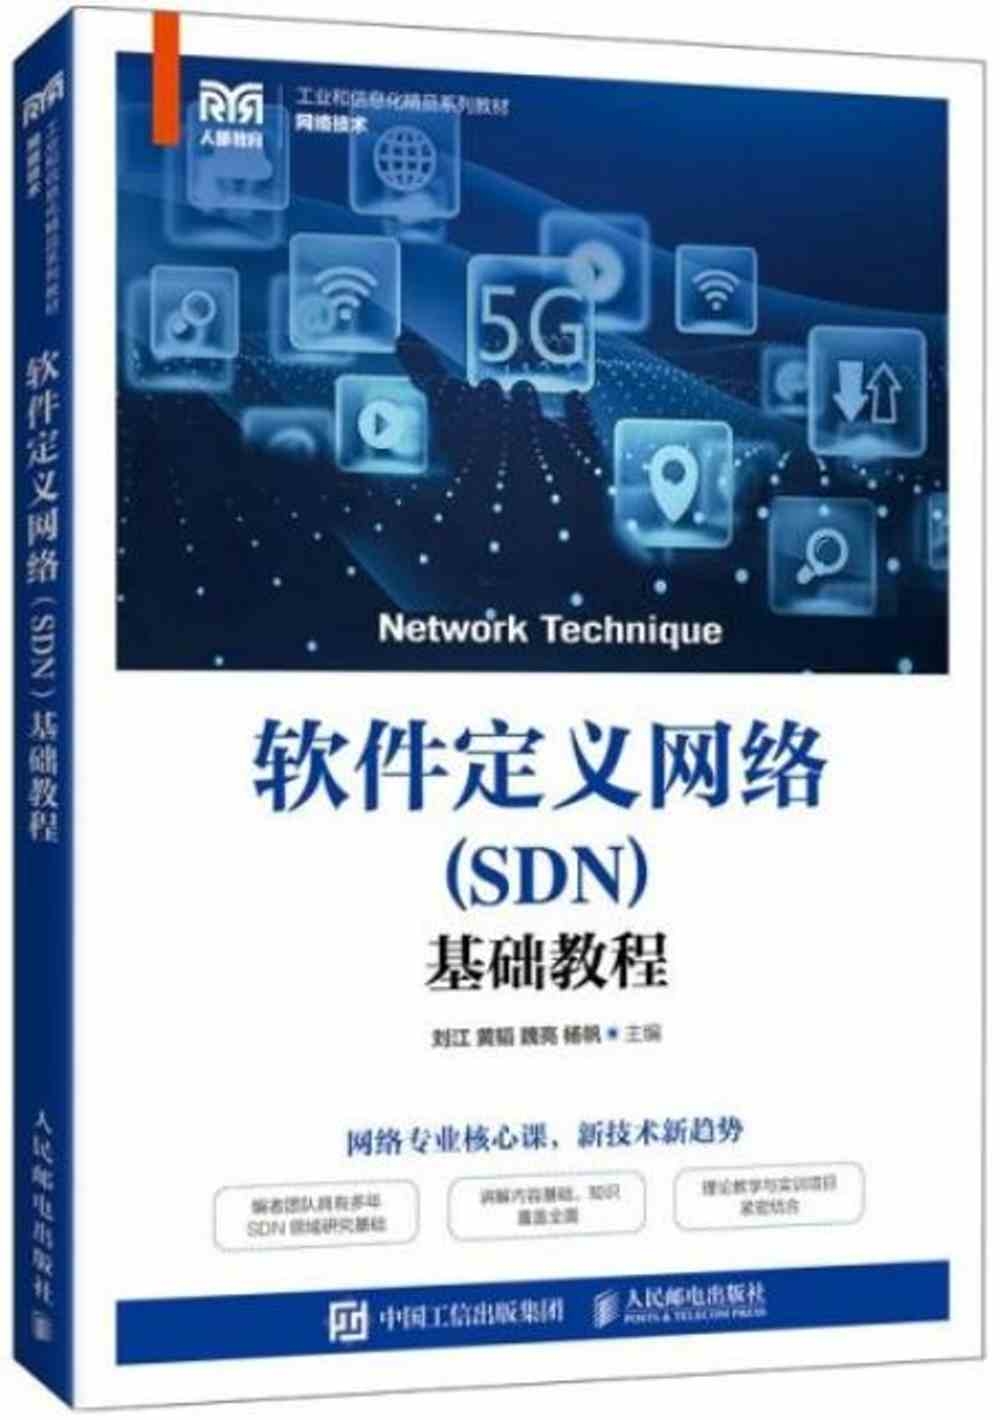 軟件定義網絡（SDN）基礎教程